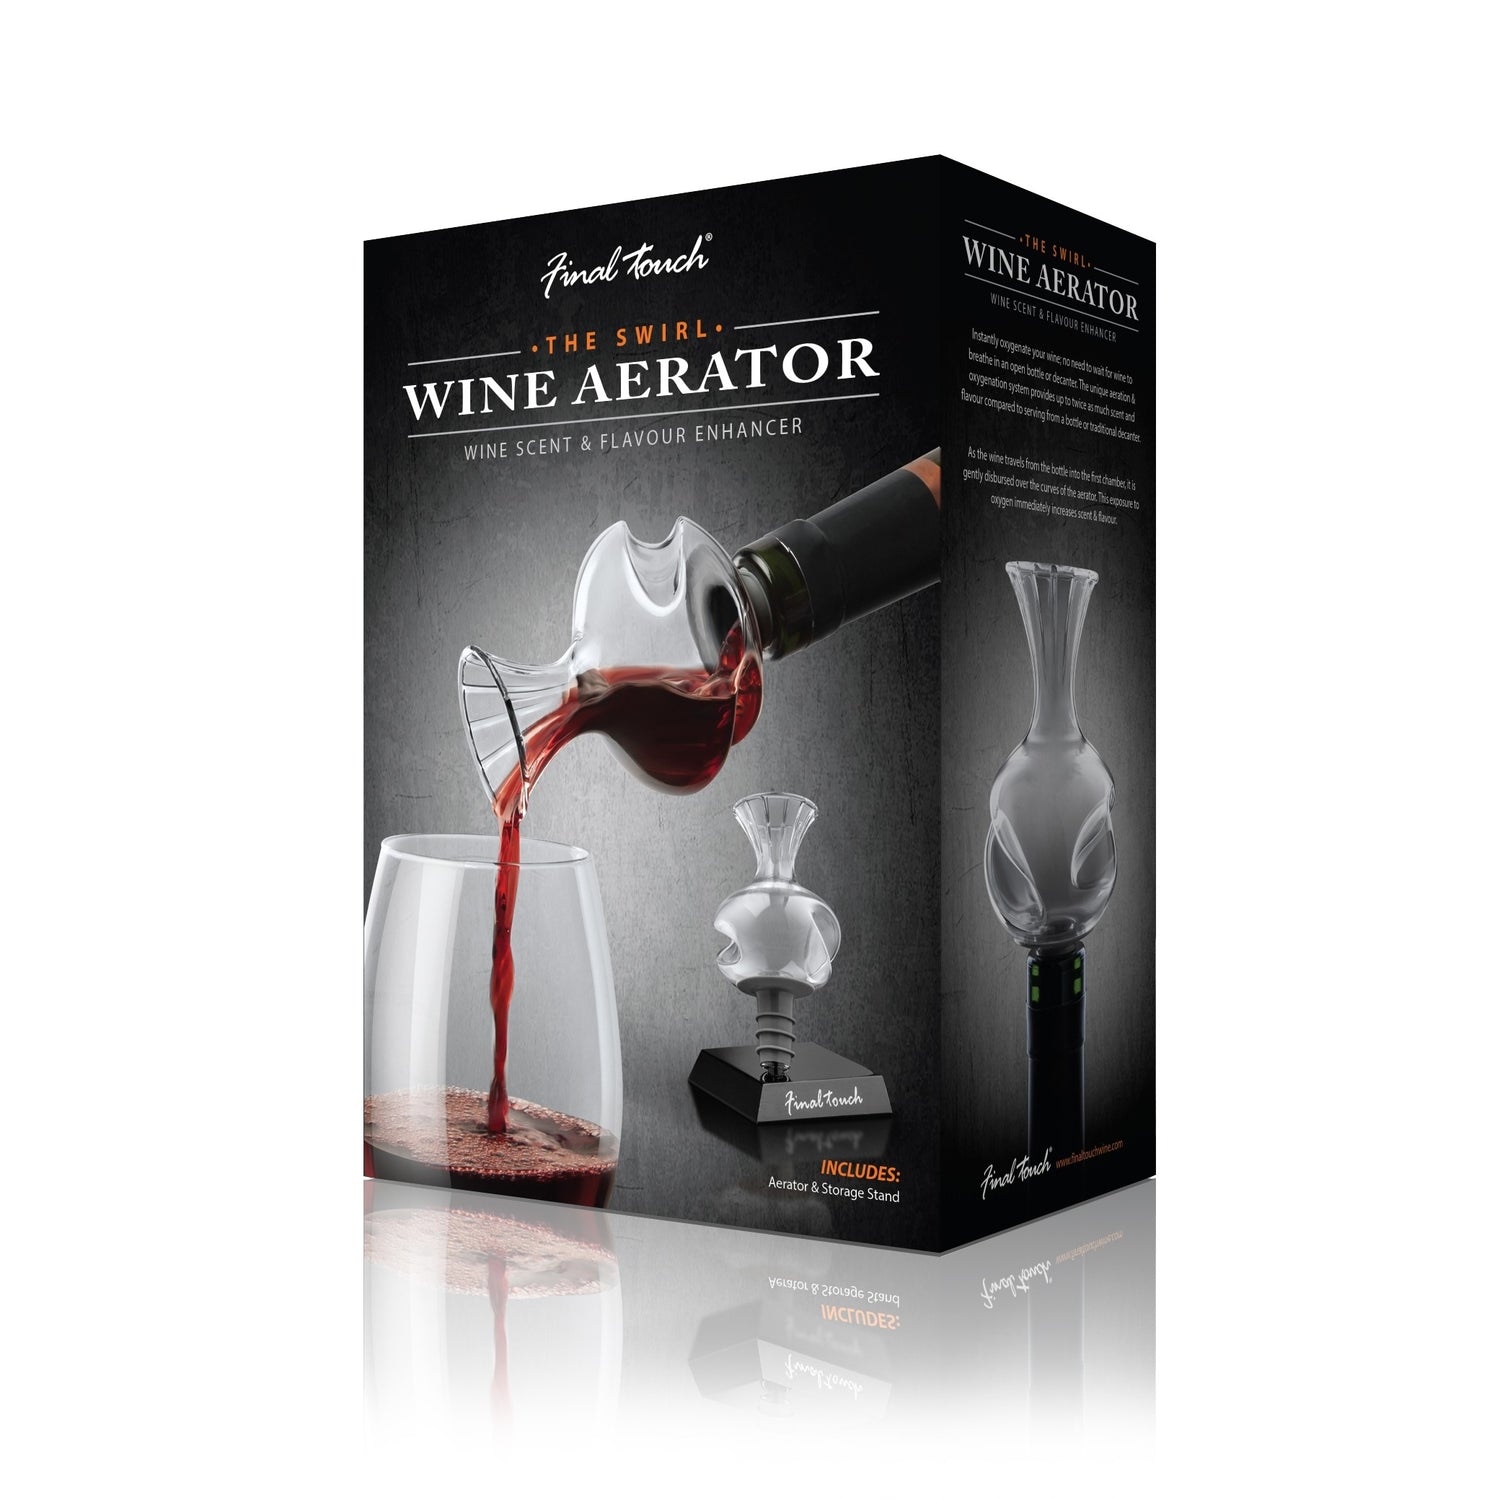 The Swirl Wine Aerator